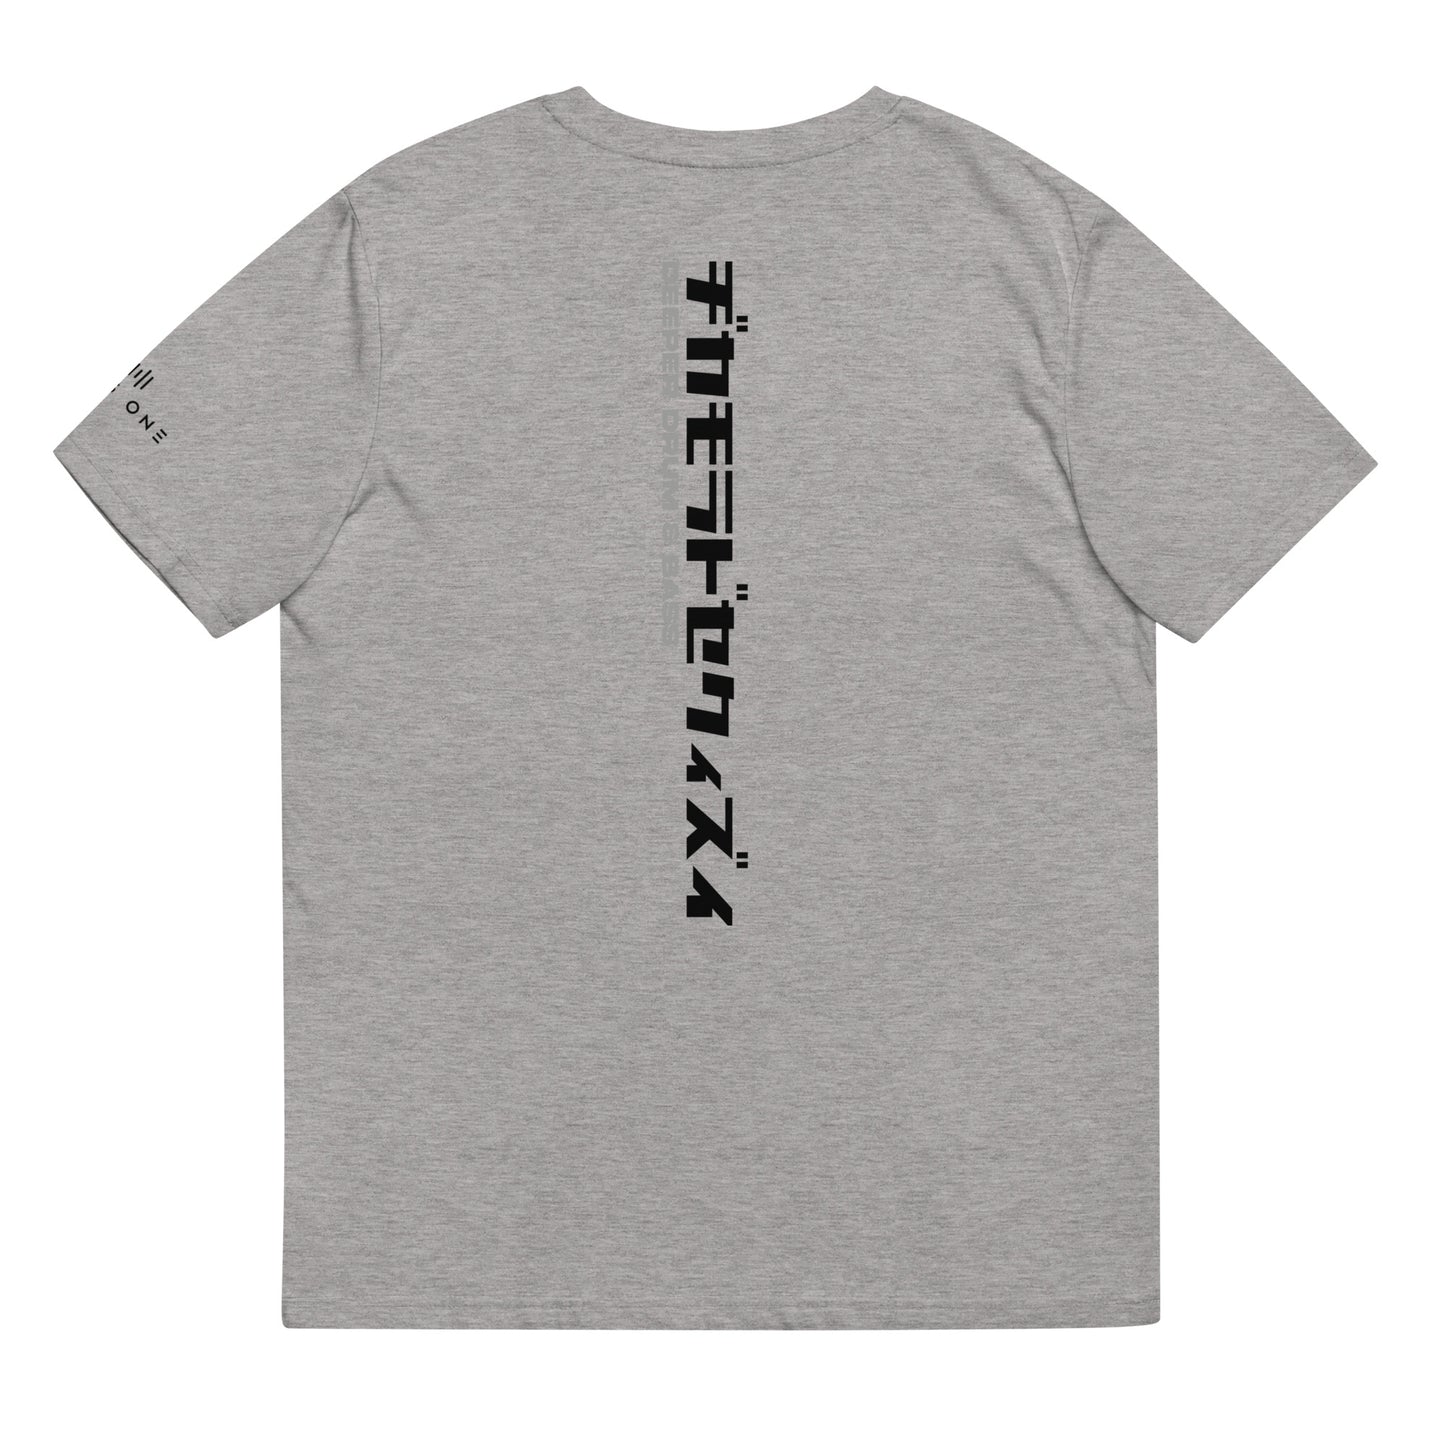 D&B (v3) Unisex organic cotton t-shirt (Black Text)